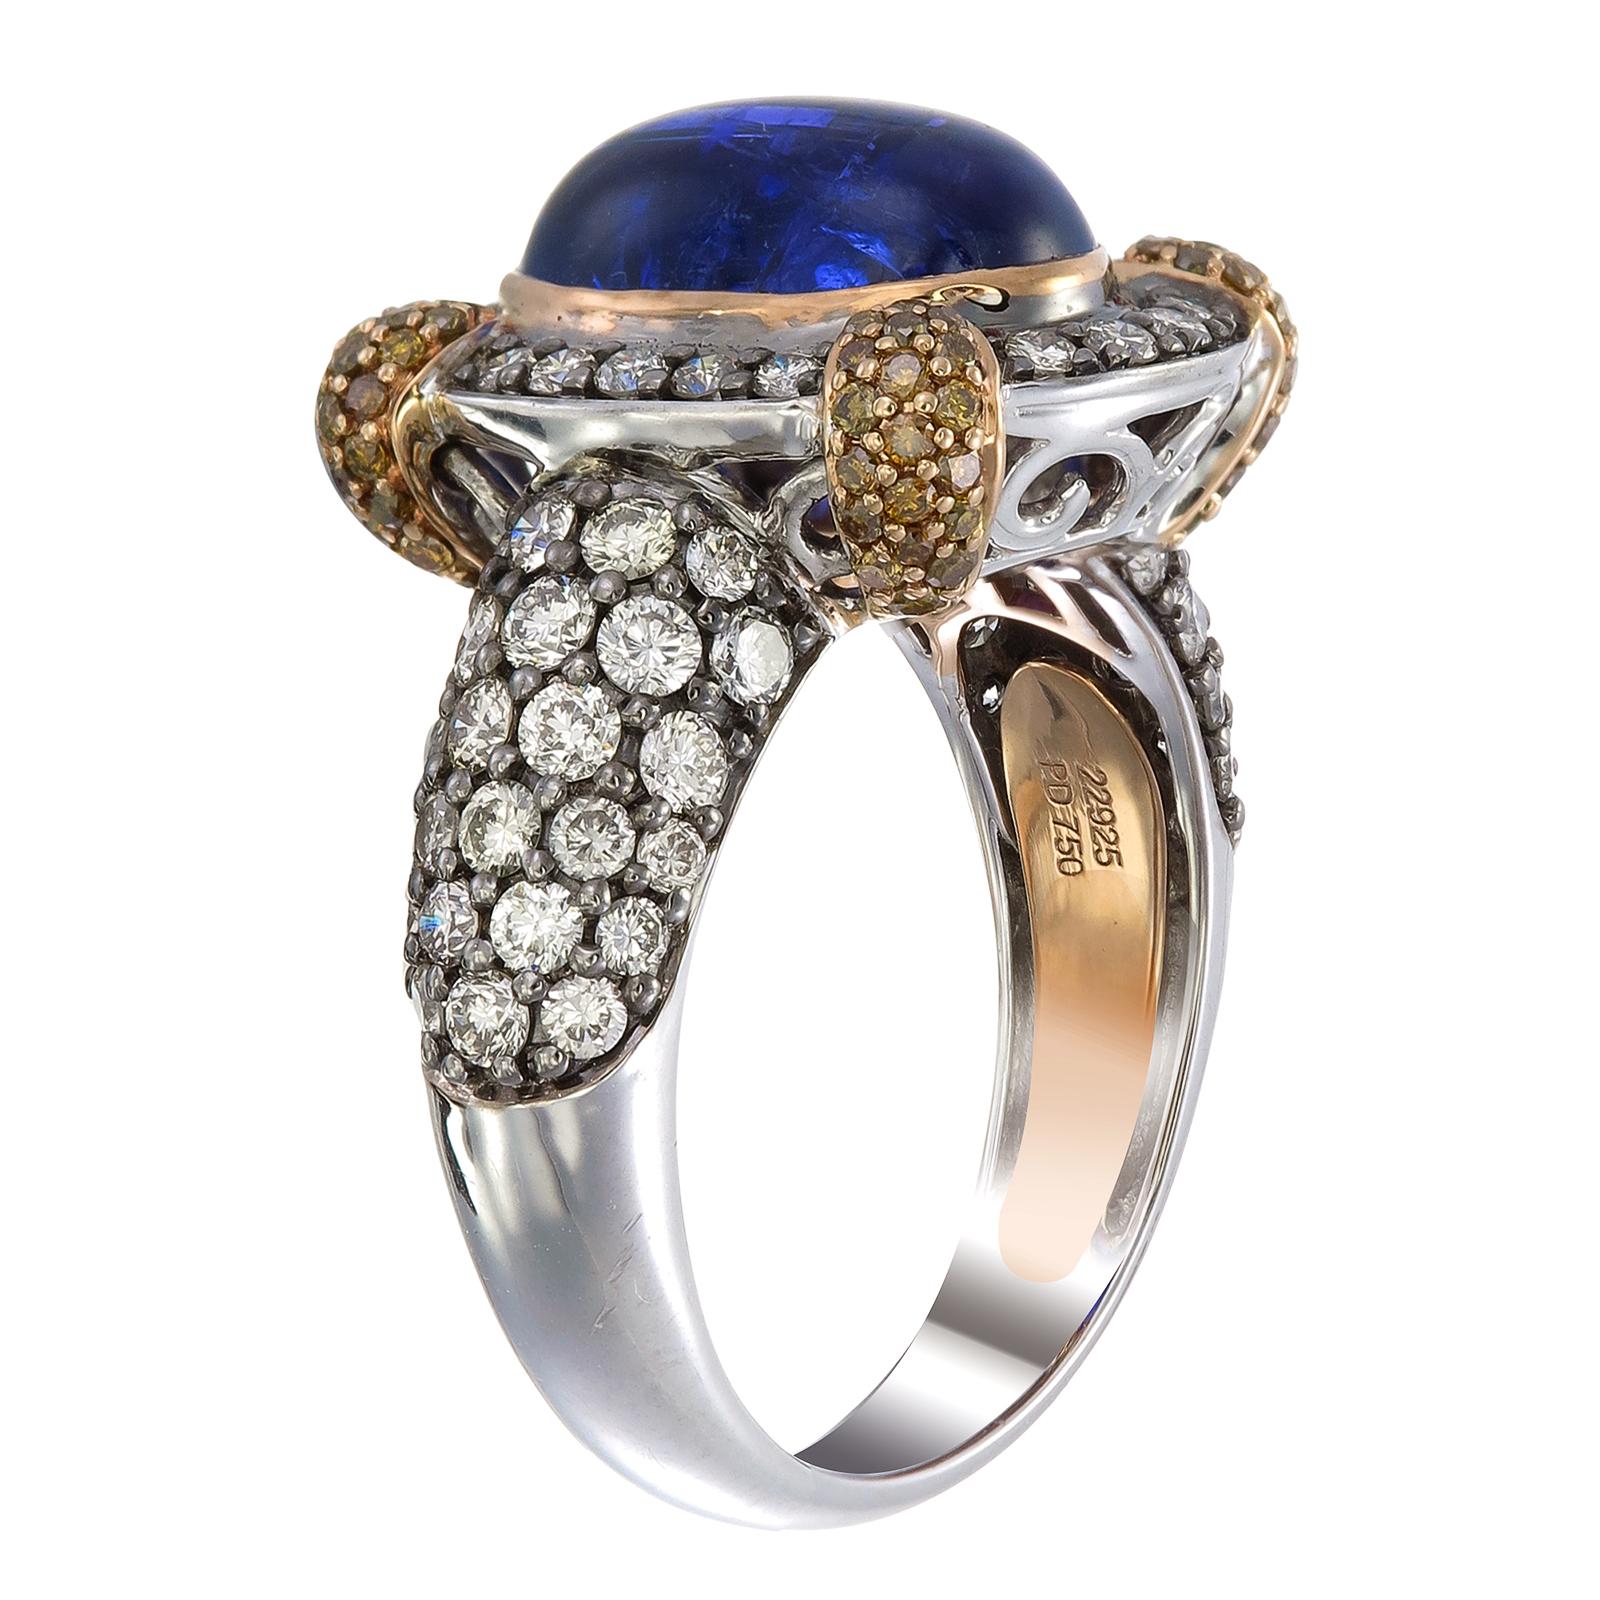 Auf einem Thron aus Gold und Diamanten sitzt ein blauer Tansanit von 6,81 Karat, der von Zacken gehalten wird, die mit 0,47 Karat Fancy-Diamanten besetzt sind. Die Schulter und der Schaft des Rings aus Palladium und 18-karätigem Gold sind mit runden